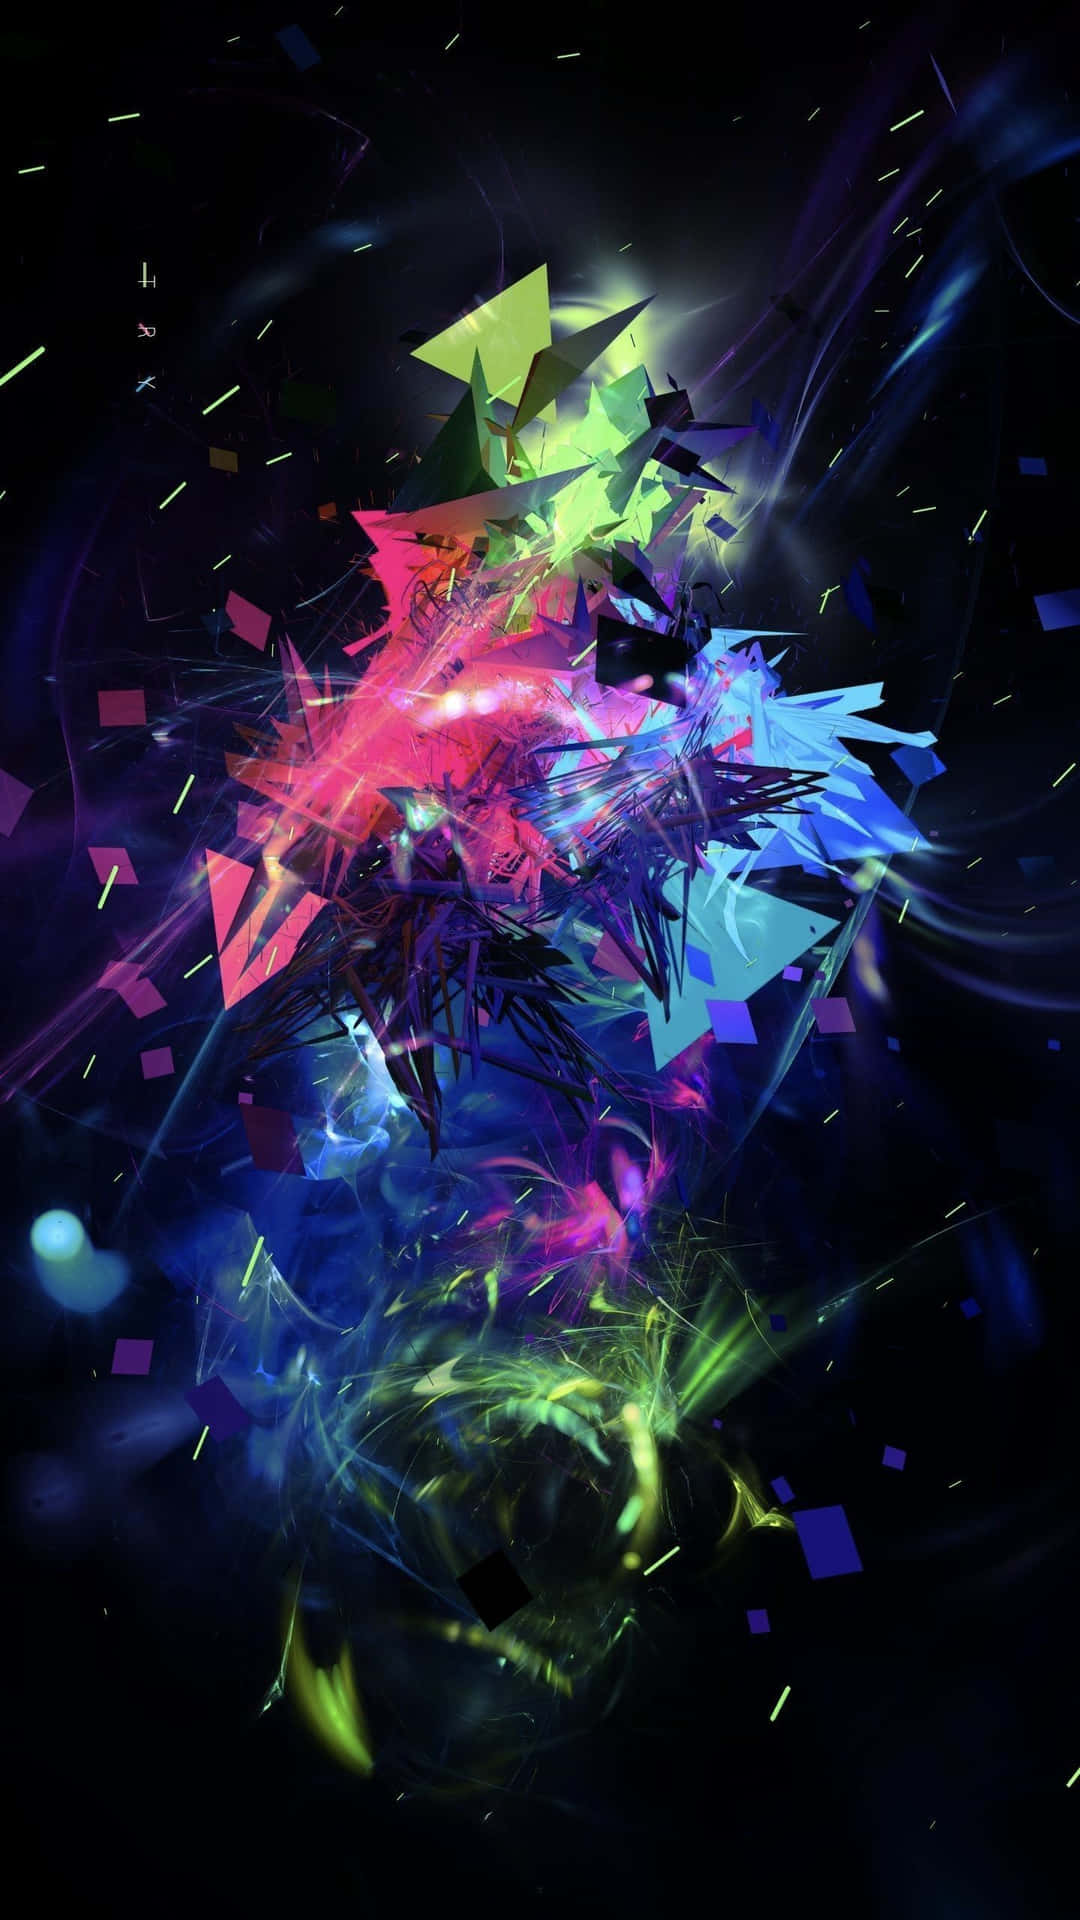 Abstract Digital Art Explosion Wallpaper